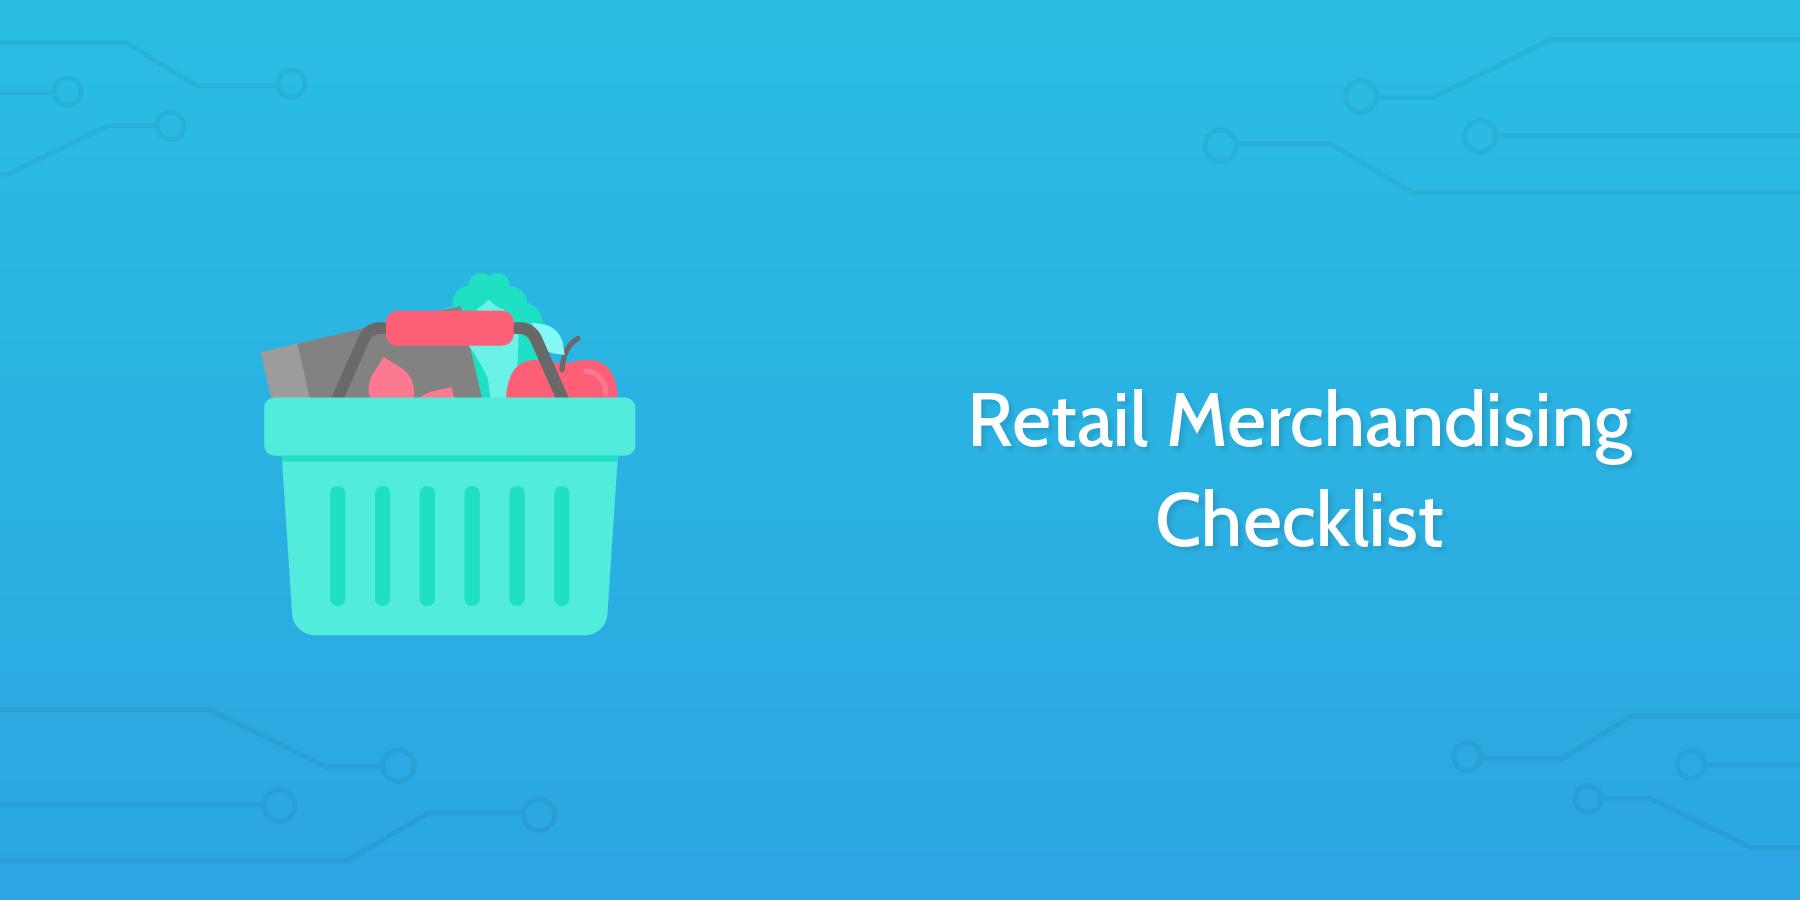 Retail Merchandising Checklist